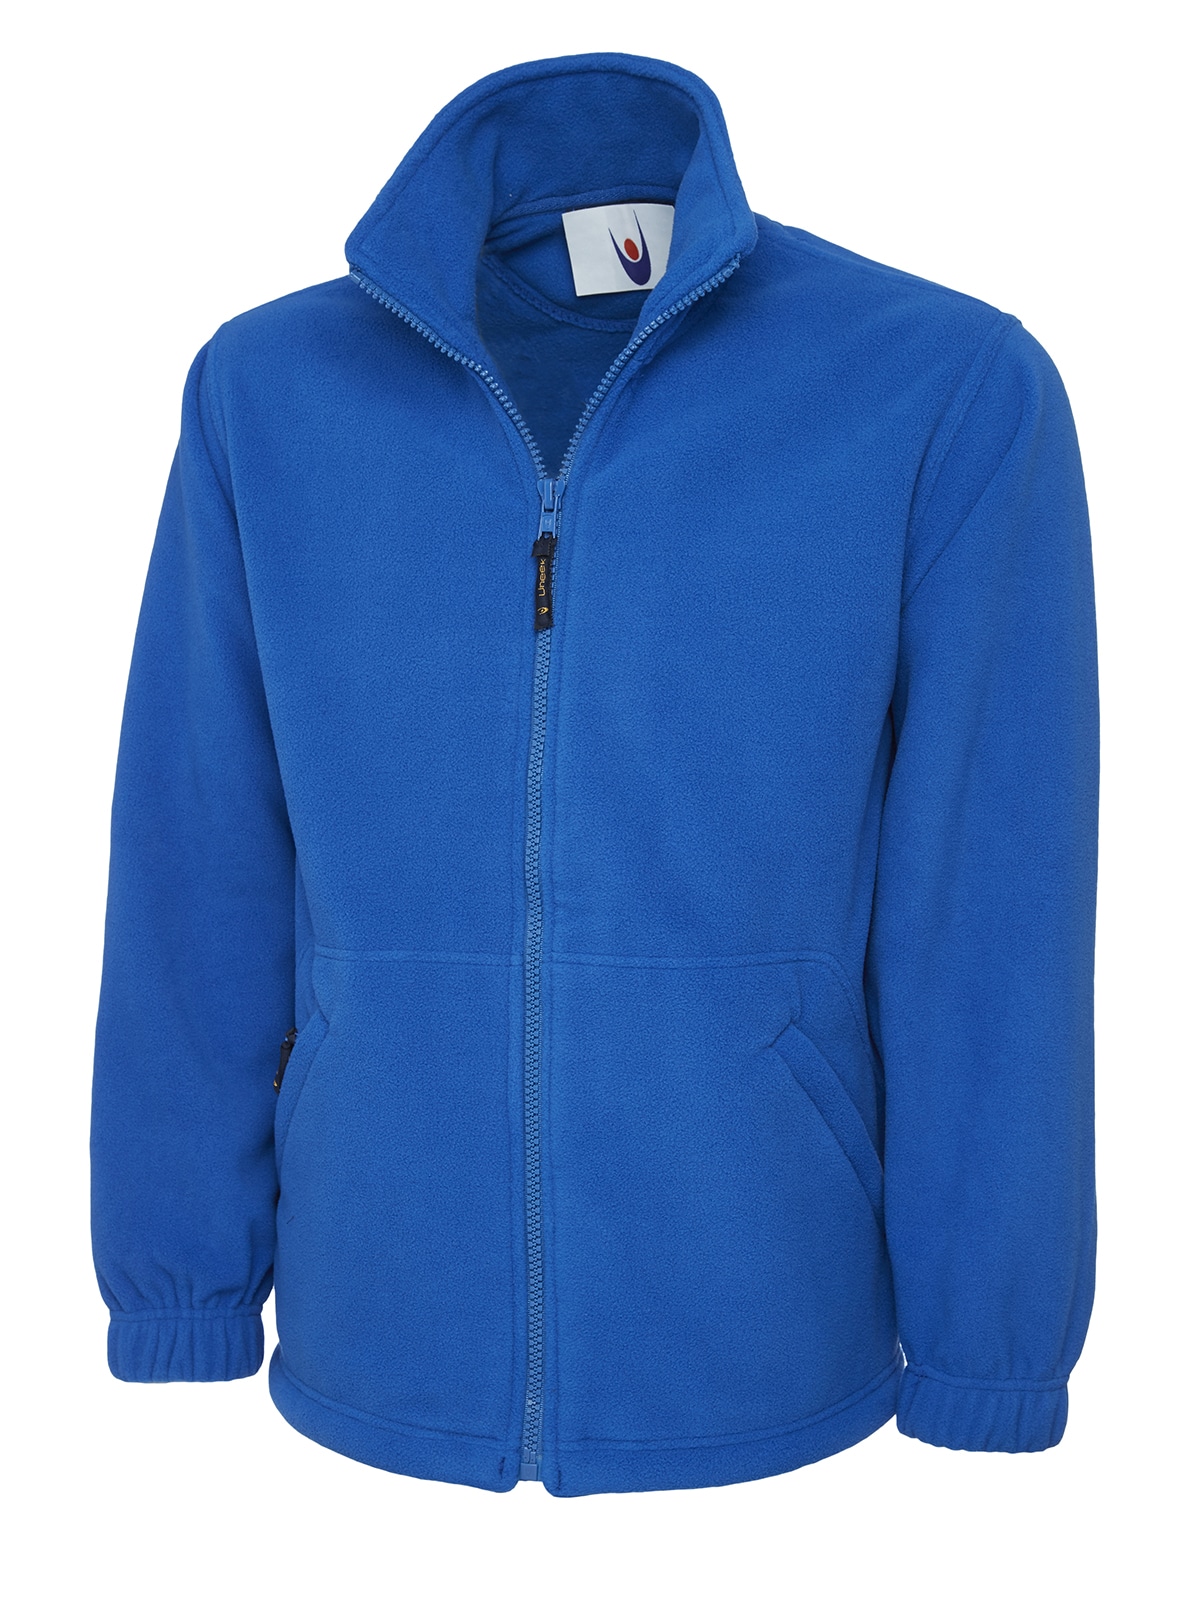 Uneek Classic Full Zip - Unisex Fleece Fit Jacket